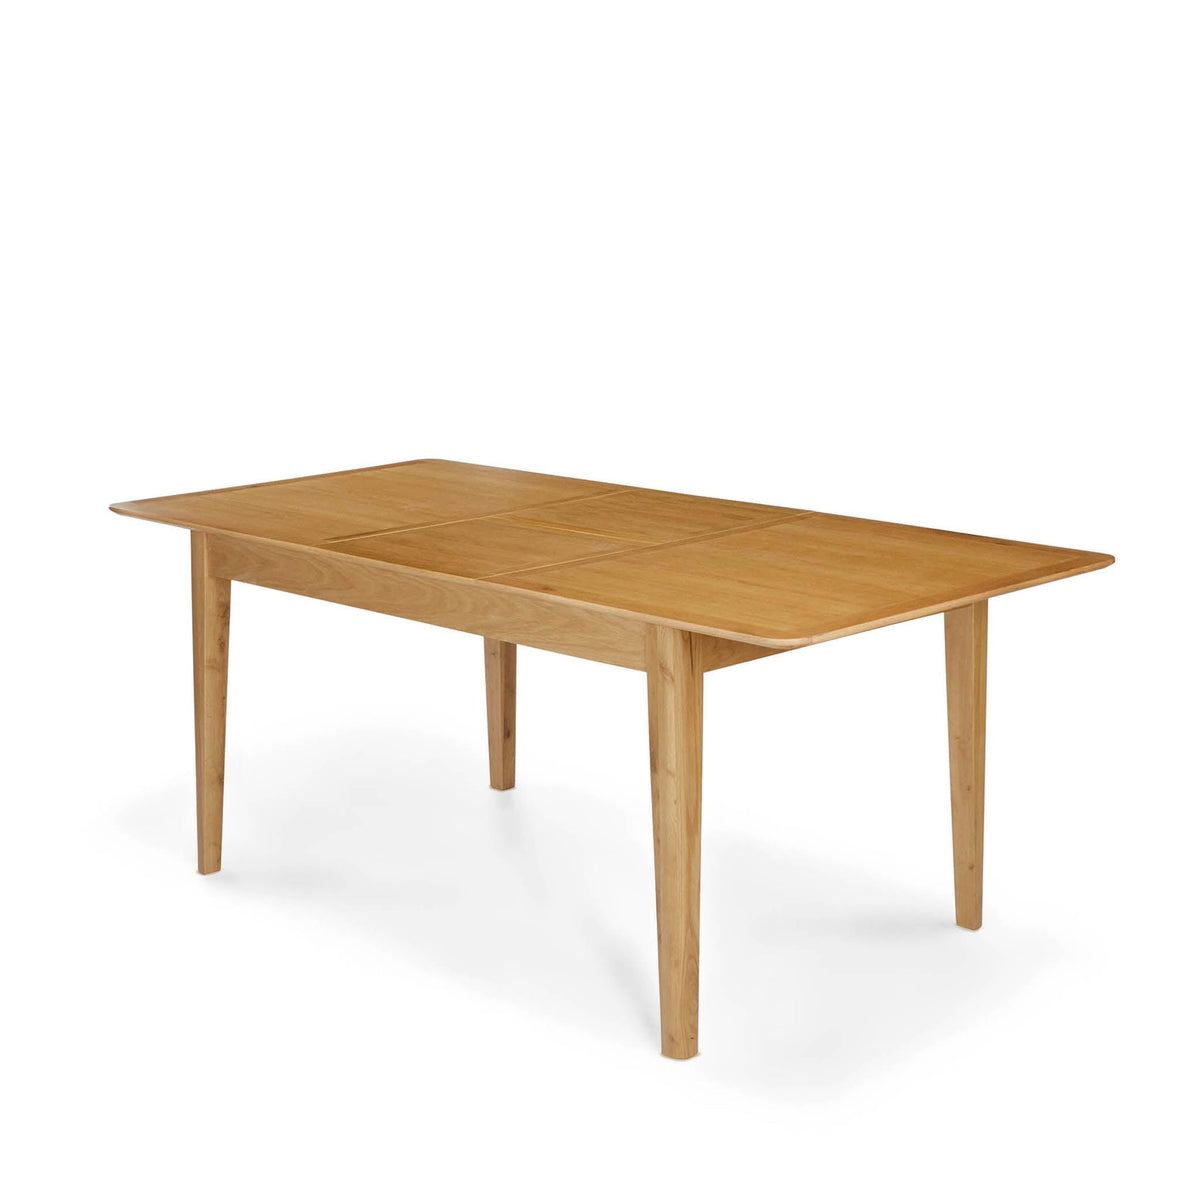 Alba Oak 120-160cm Extending Table - Fully Extended